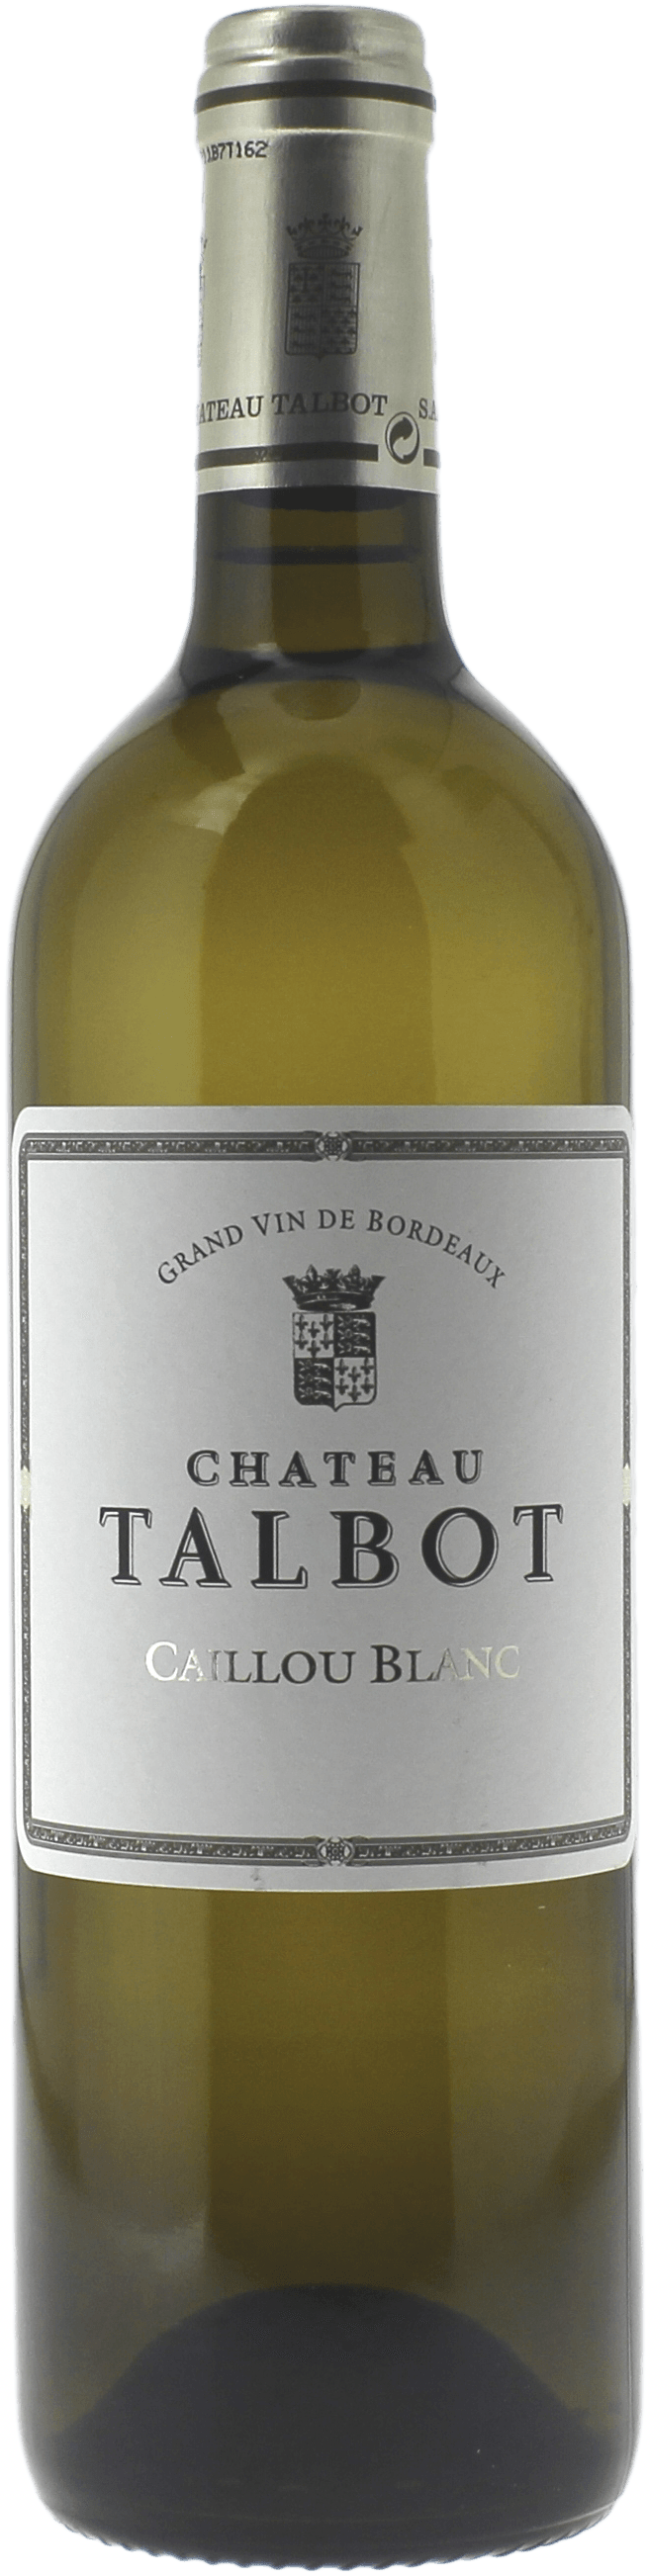 Caillou blanc du chteau talbot 1998  Saint Julien, Bordeaux blanc